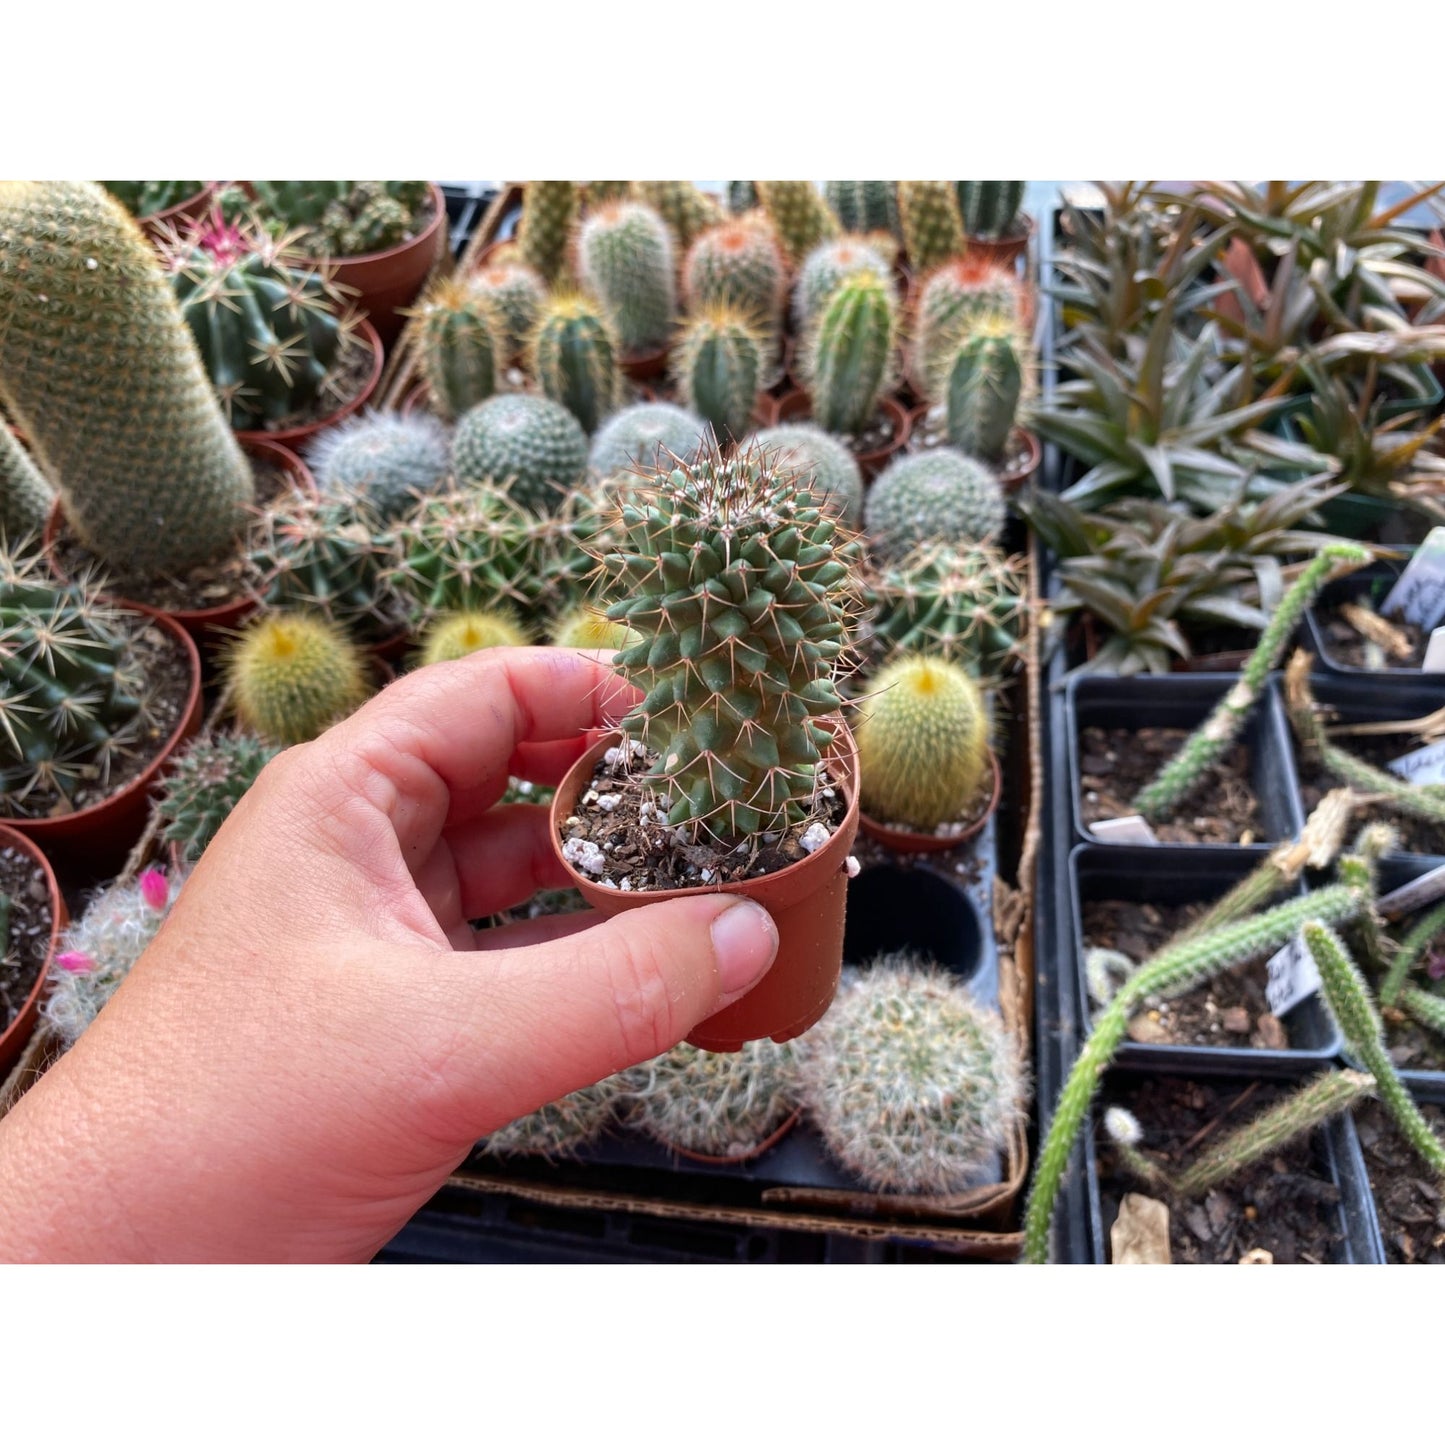 Cactus Toluca Mammillaria polythele 3" Pot Live Plant